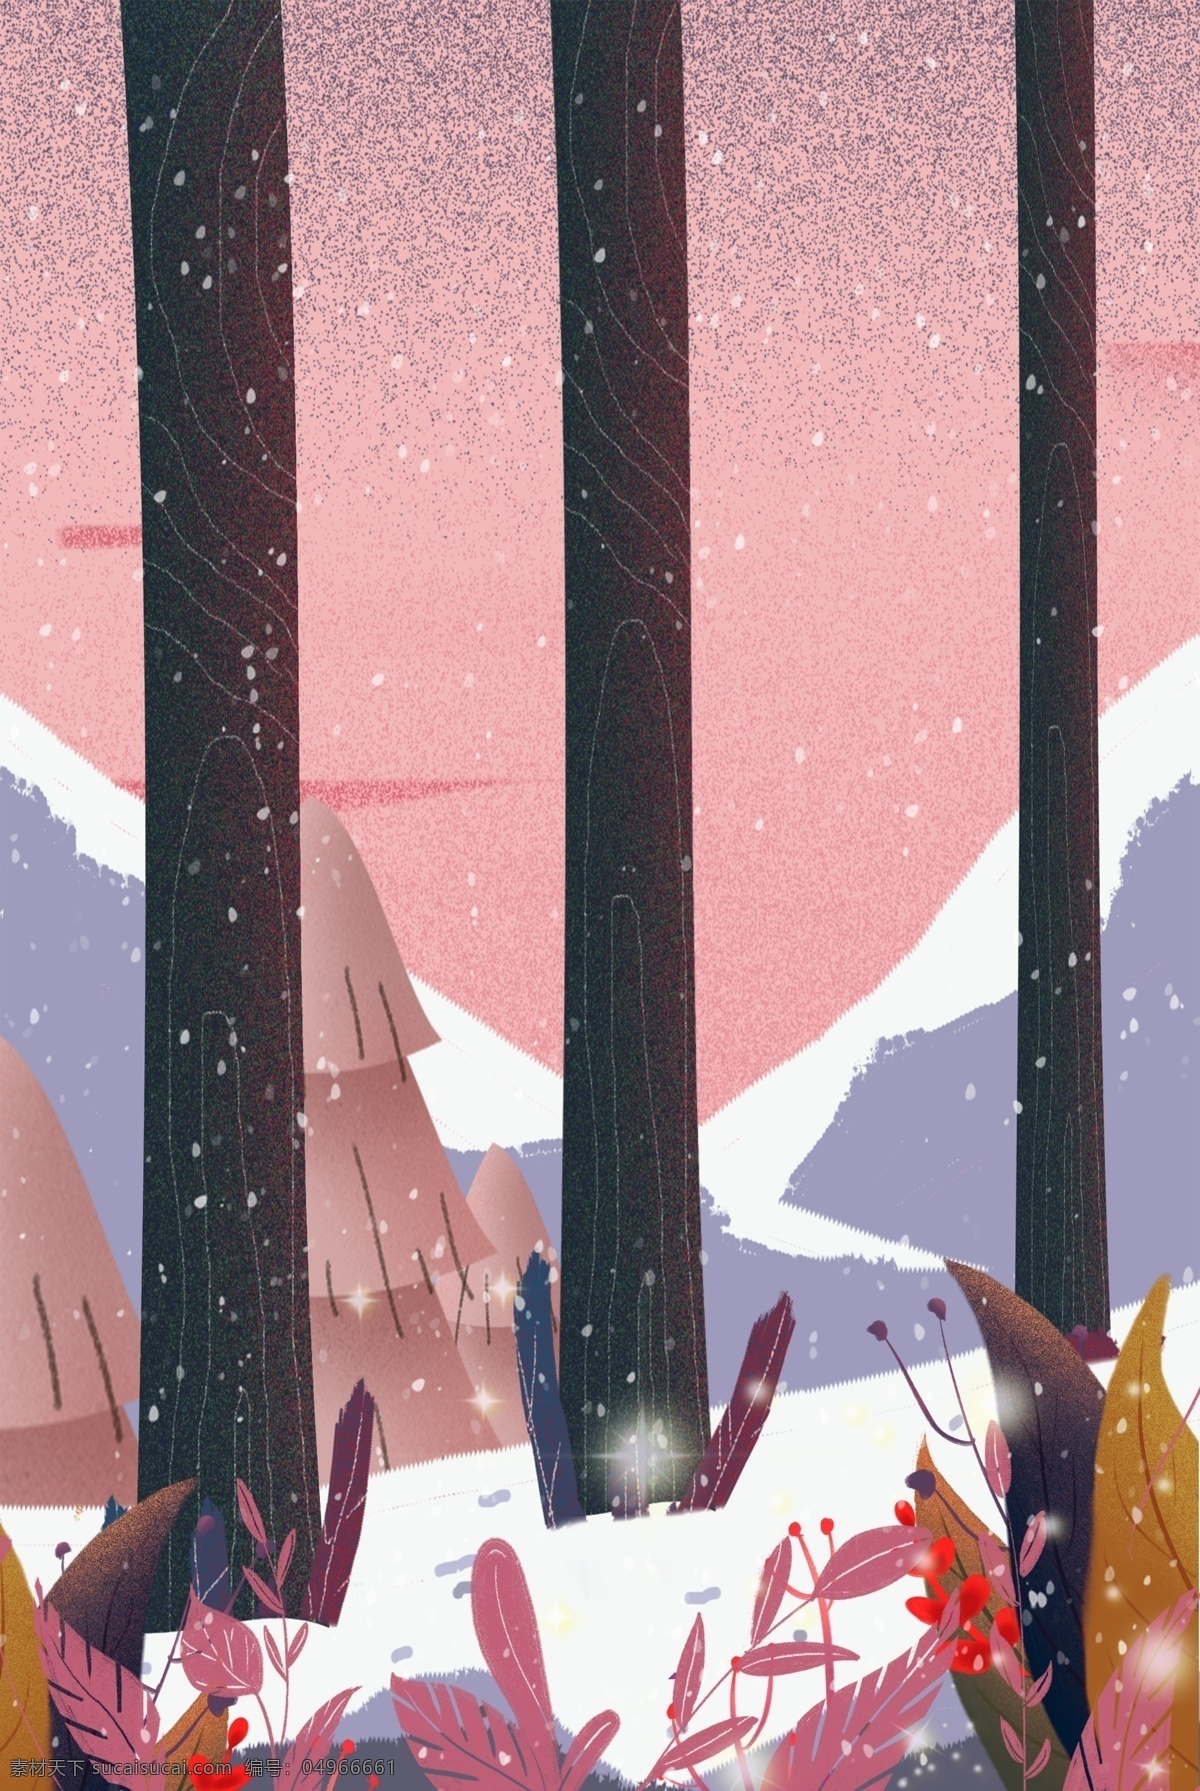 冬天 森林 雪景 电商 淘宝 背景 小清新 卡通 手绘 插画 自然风景 粉色 雪花 上新 风景 淘宝背景